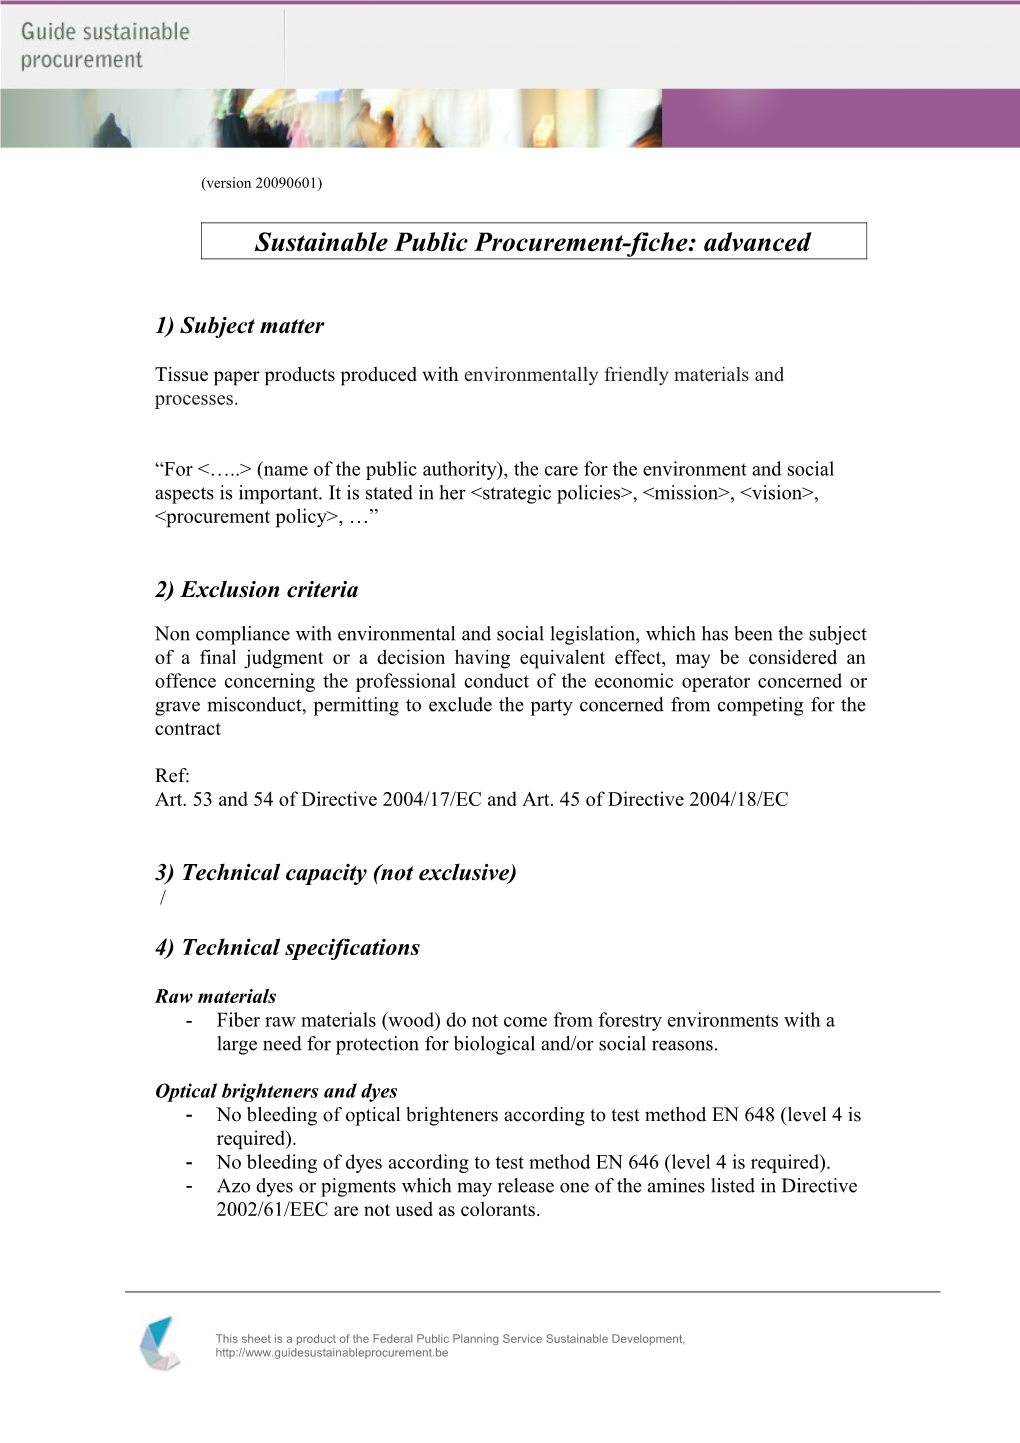 Sustainable Public Procurement-Fiche: Advanced